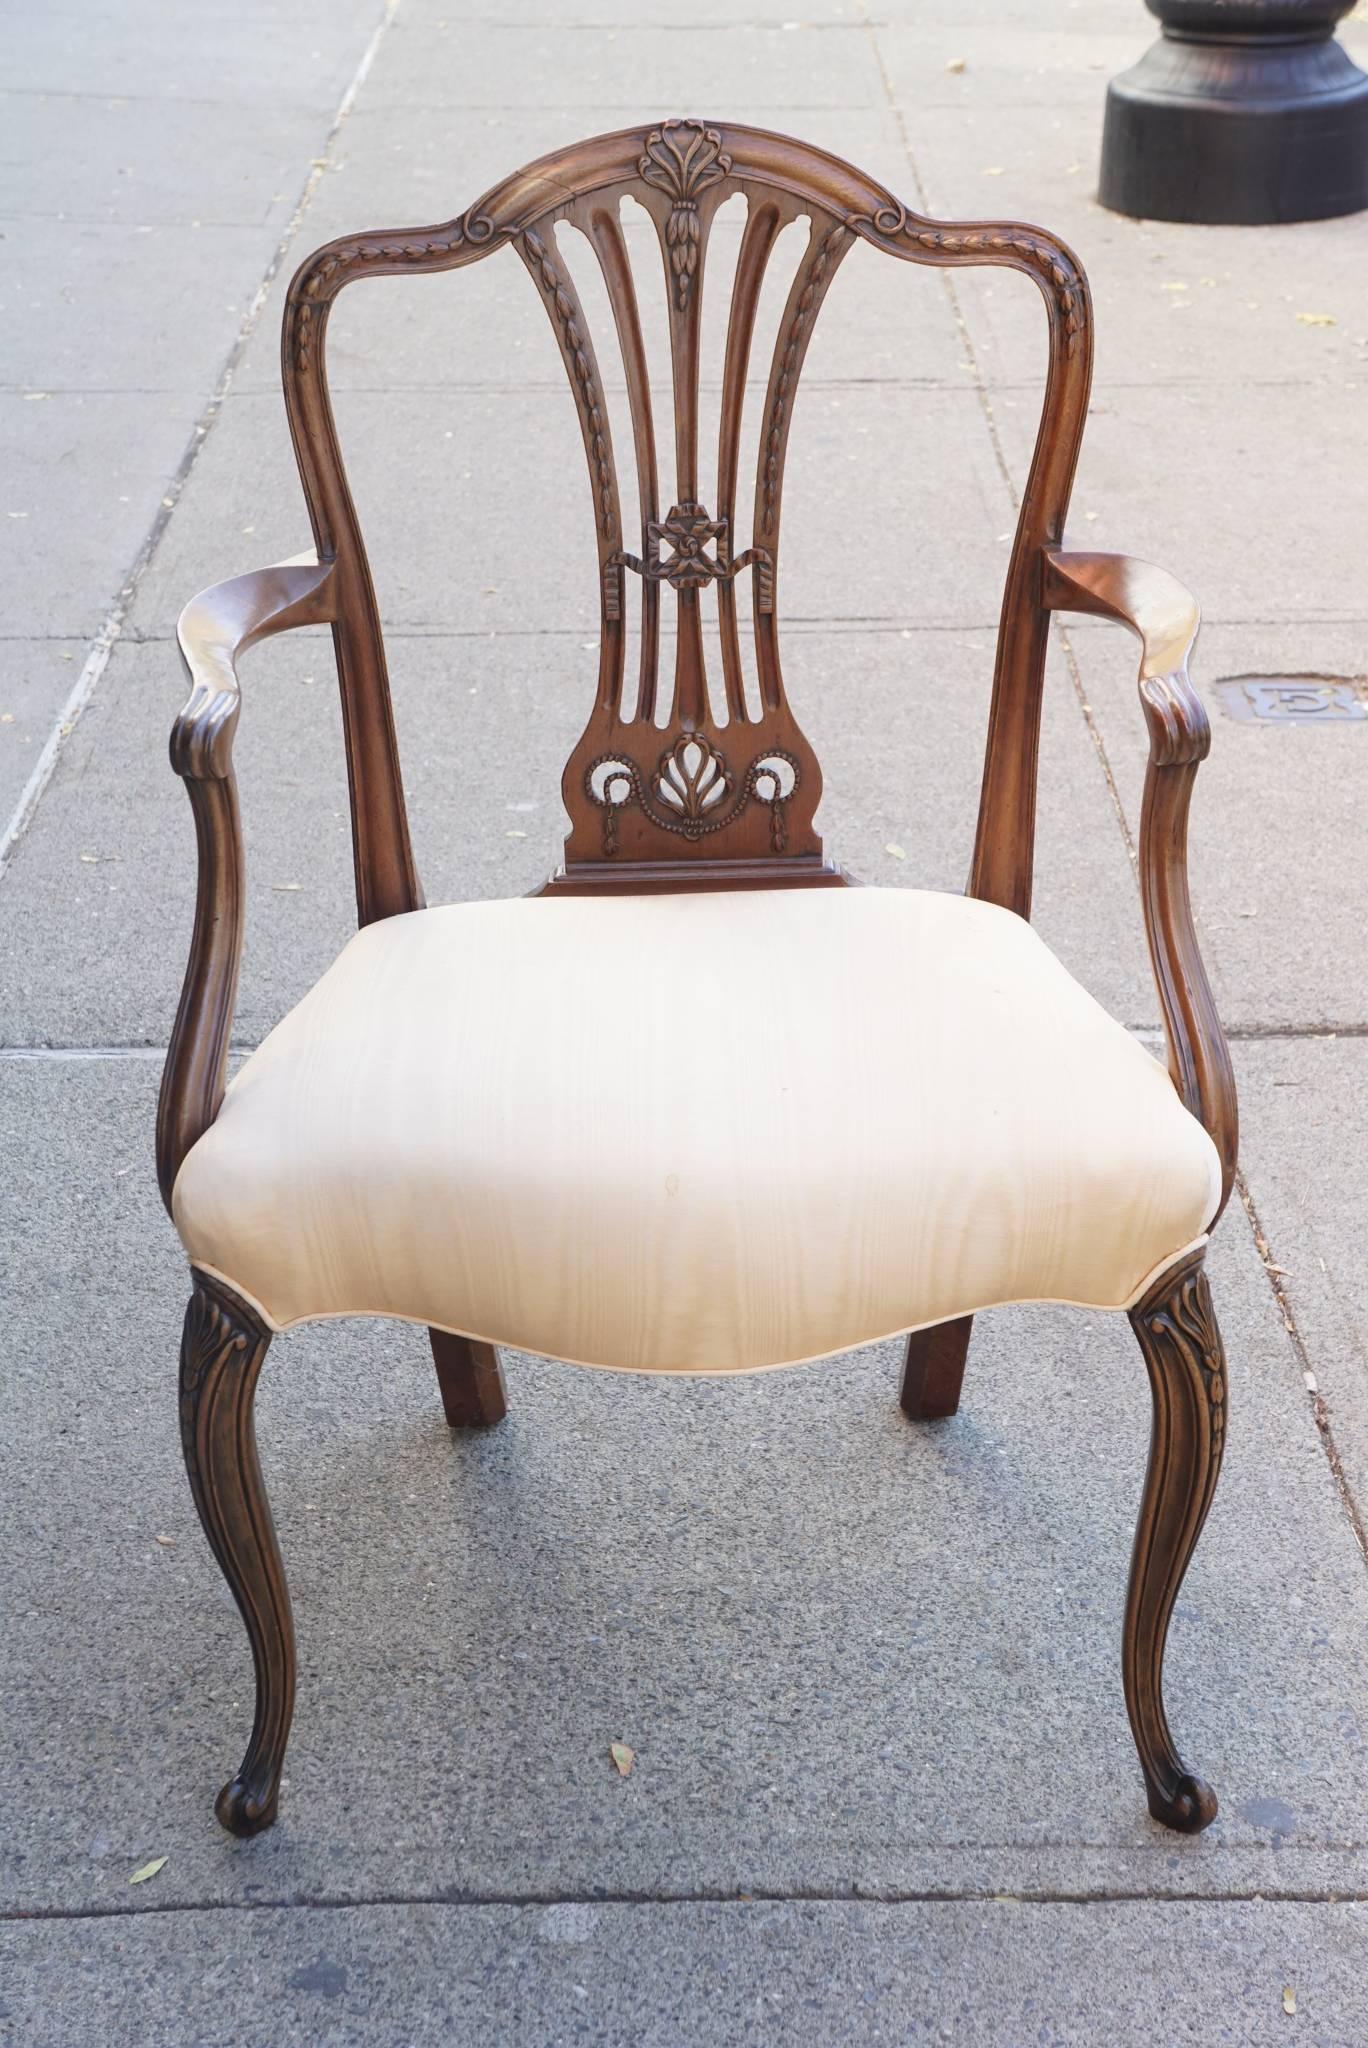 Dieser fein geschnitzte Stuhl aus kostbarem importiertem Mahagoni weist viele besondere Details auf, darunter eine geformte Bogenlehne mit einem durchbrochenen balusterförmigen Splat, geformte Armlehnen und anmutige Cabriole-Beine mit atheneum- und